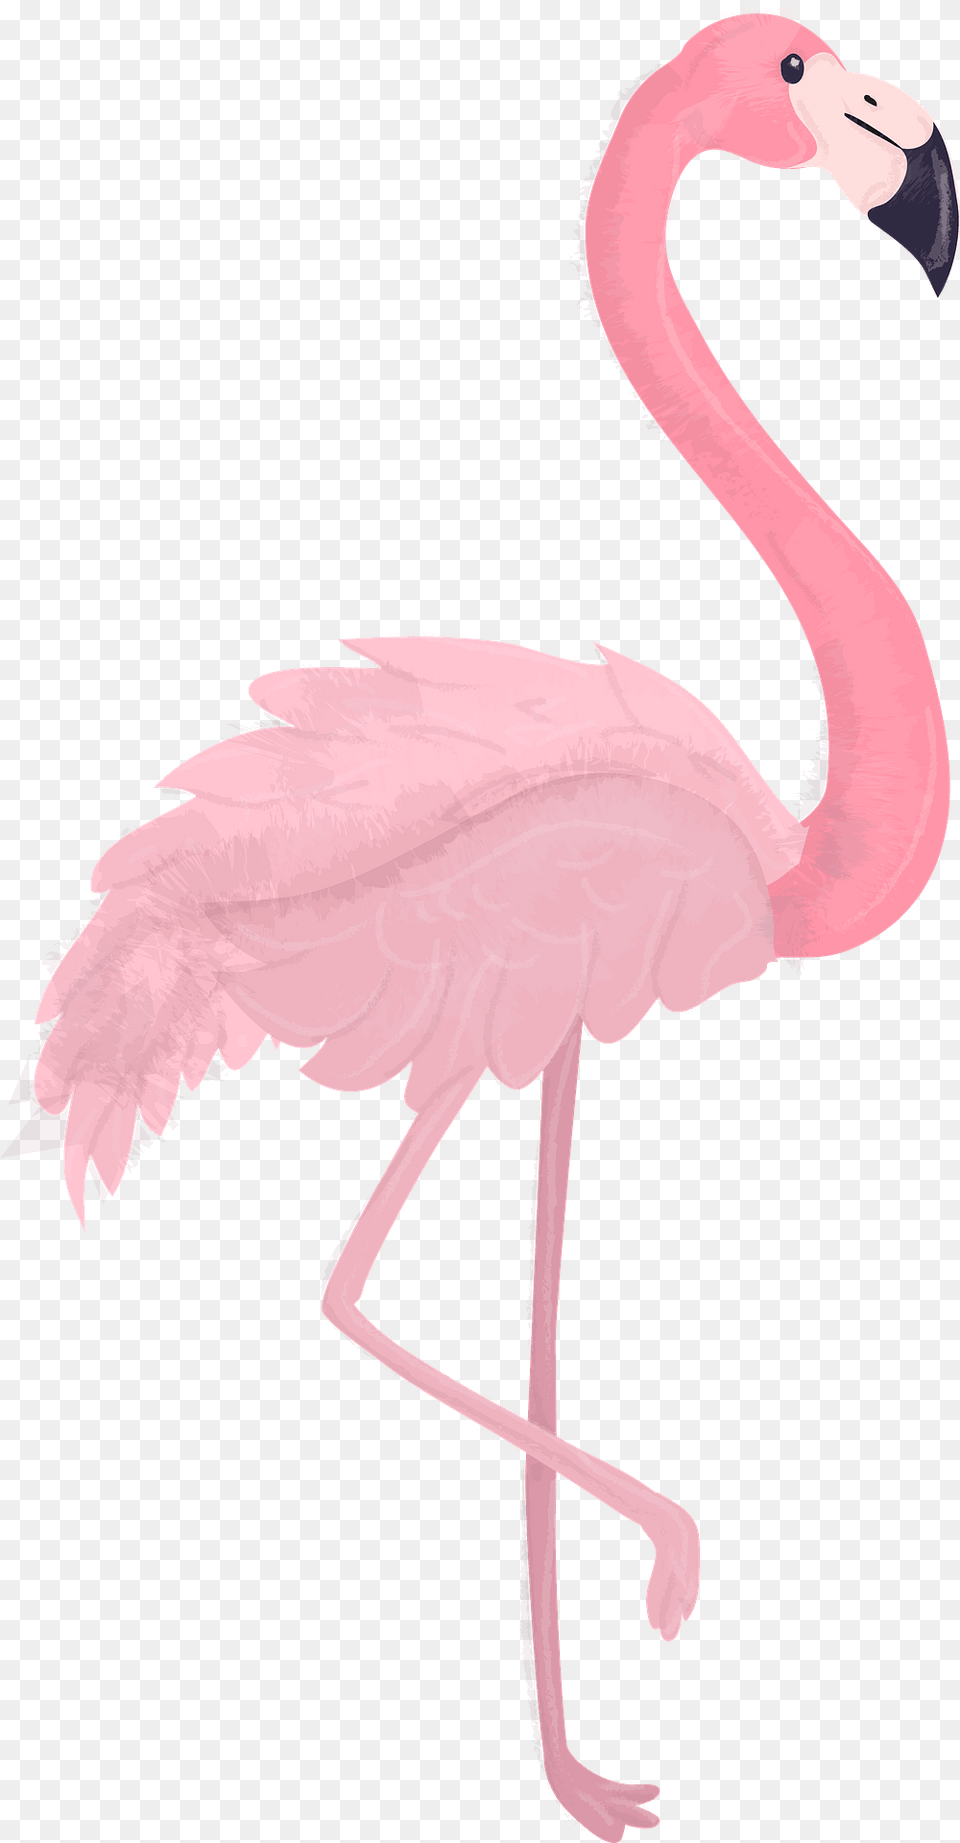 Flamingo Clipart, Animal, Bird Free Transparent Png